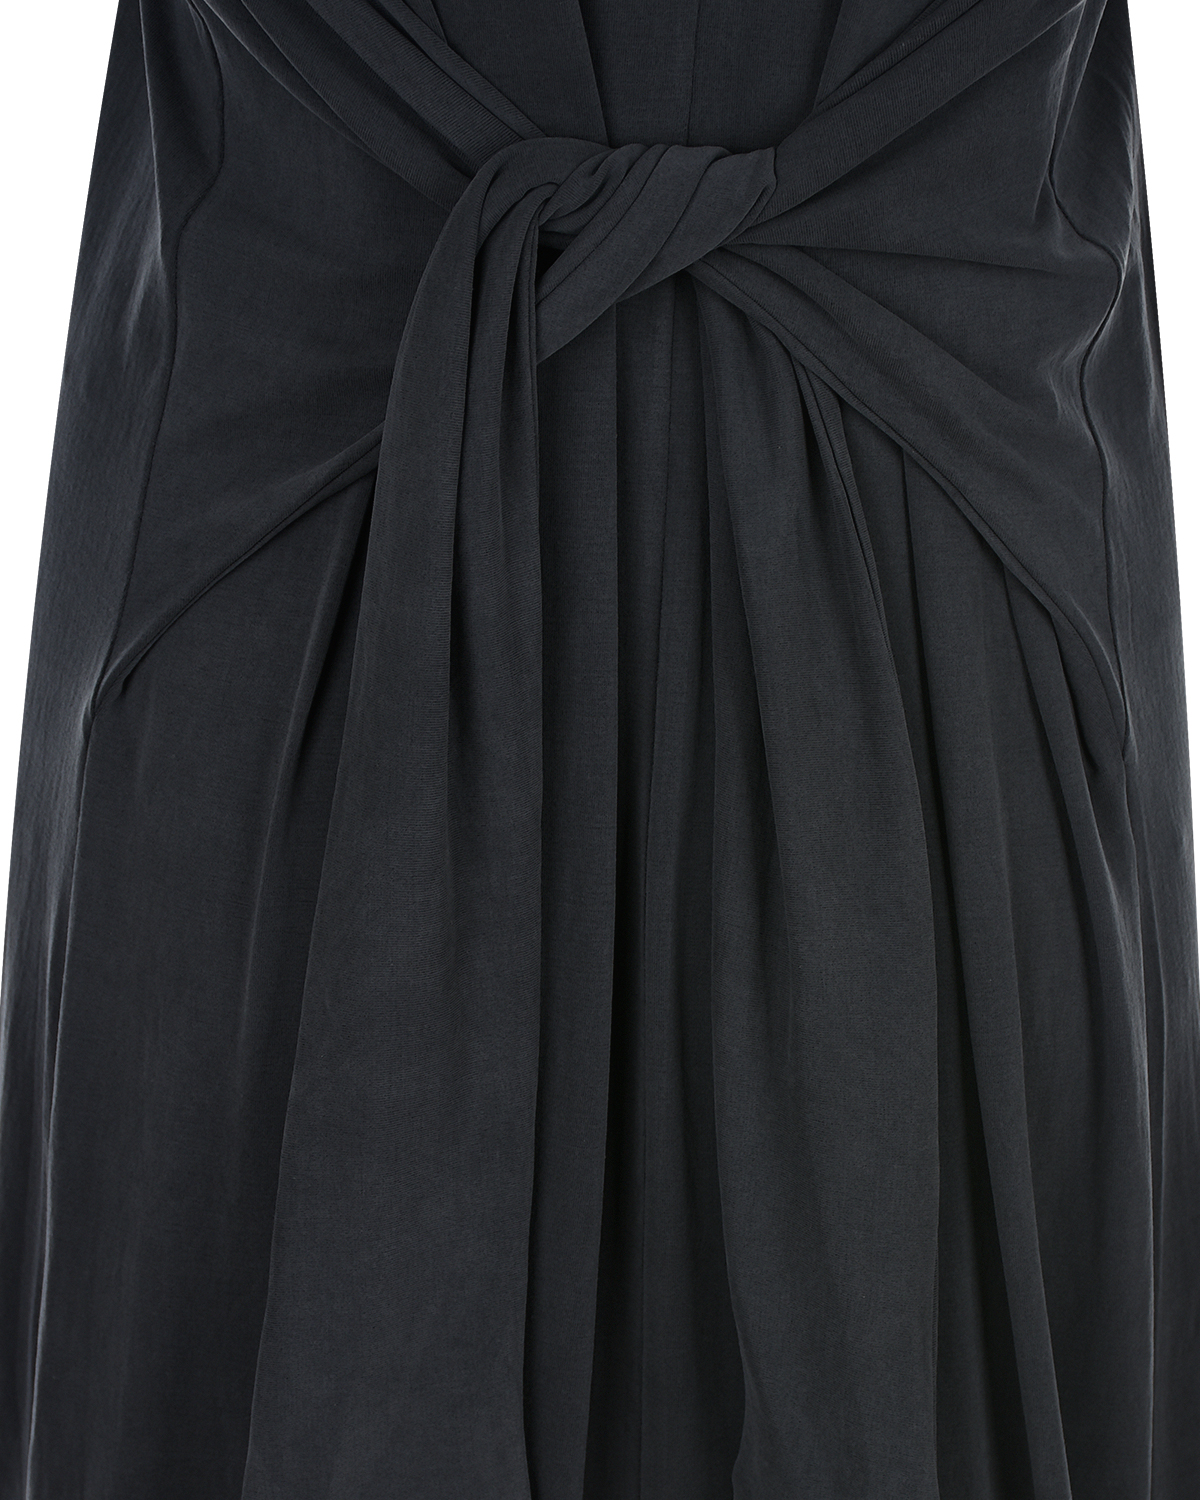 Темно-серое платье с короткими рукавами Attesa, размер 38, цвет серый - фото 6